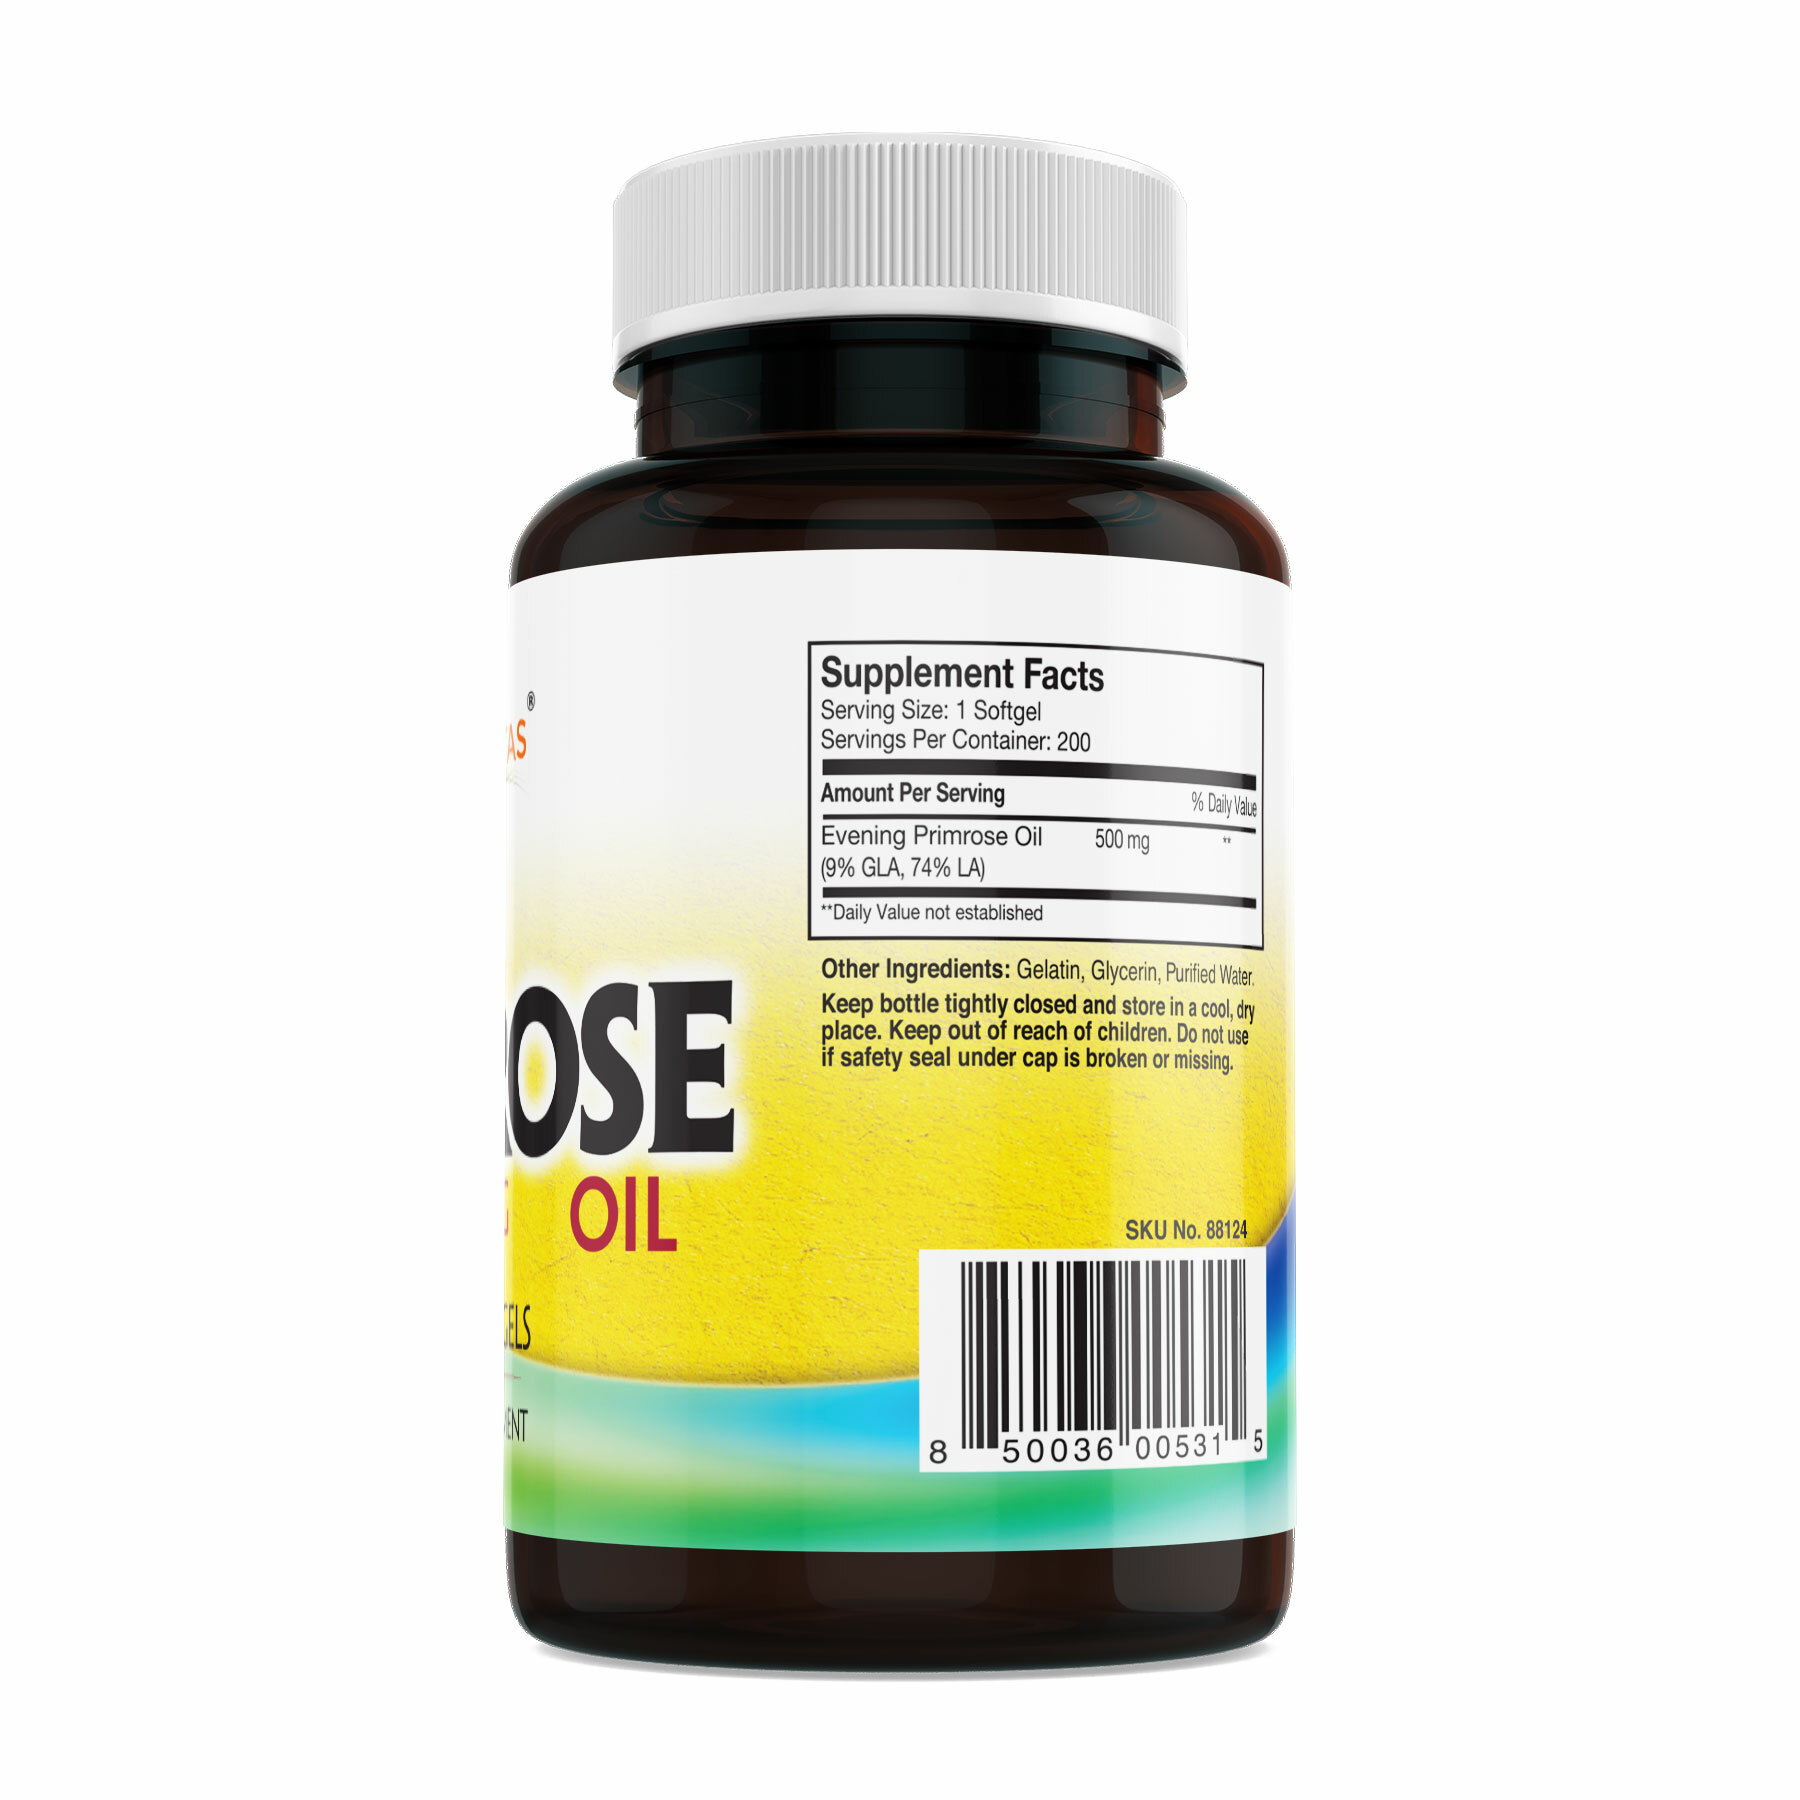 THP SUPPLE(r-リノレン酸含有月見草種子油加工食品) - 健康用品